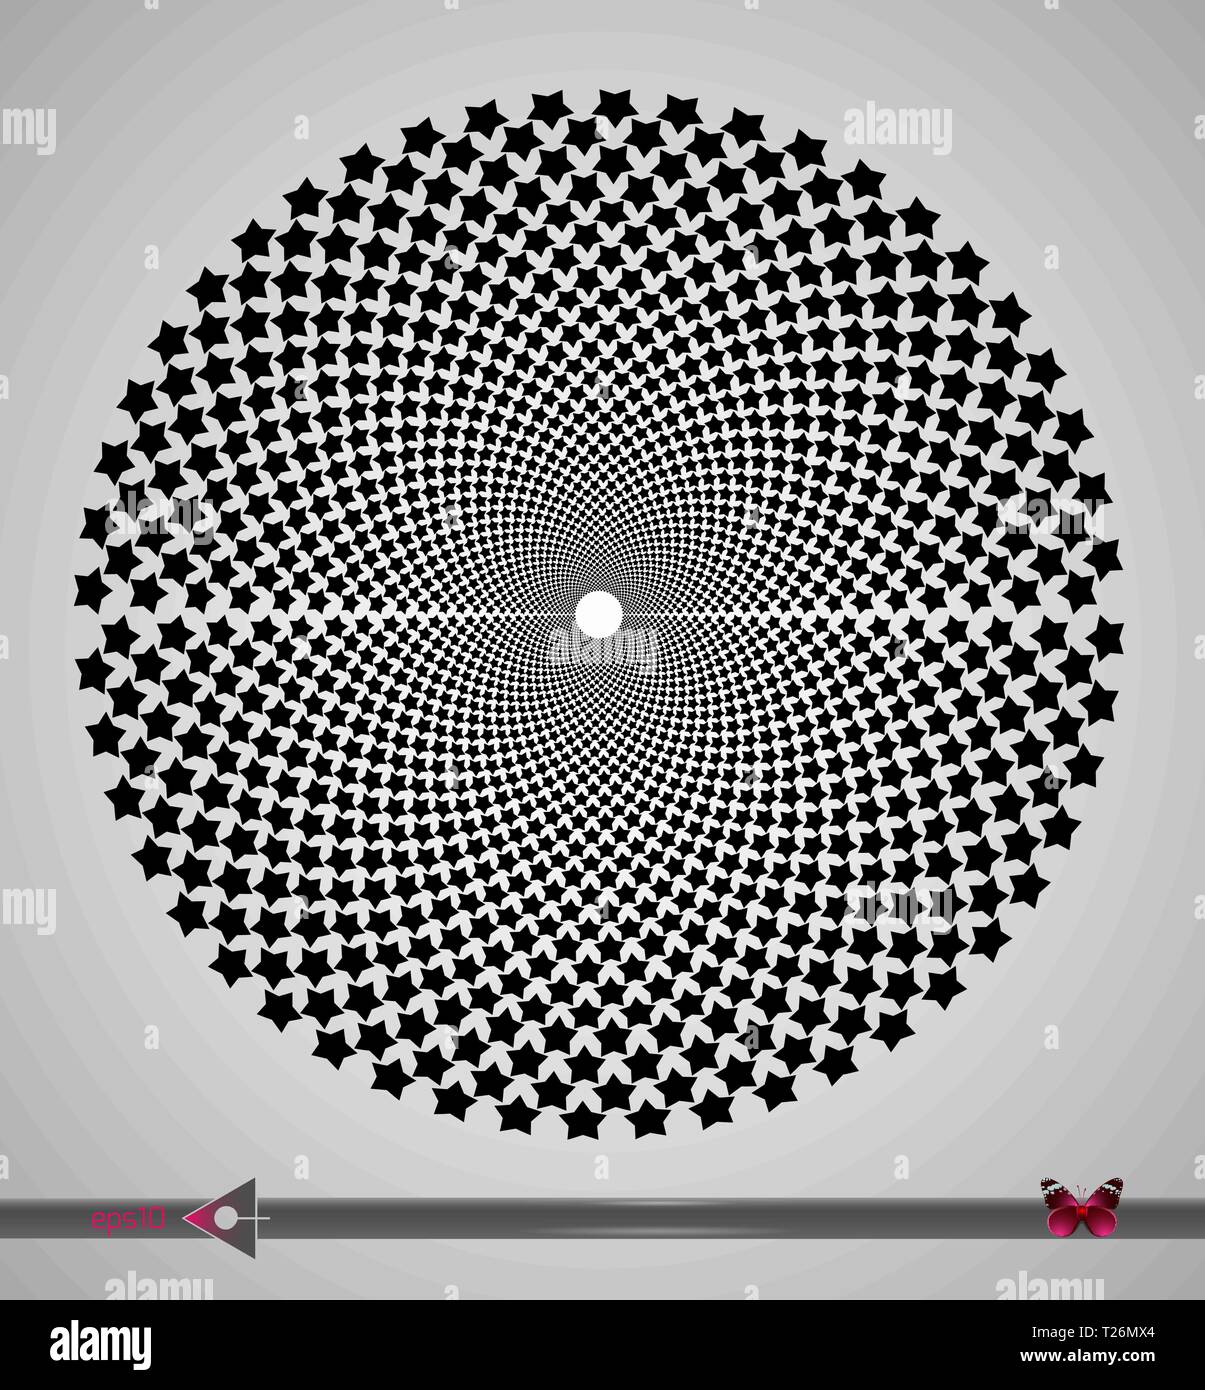 Vector schwarz und weiße Spirale Sterne Swirl abstrakte Runde optische Täuschung. Abstrakte geometrische Hintergrund Design. Stock Vektor